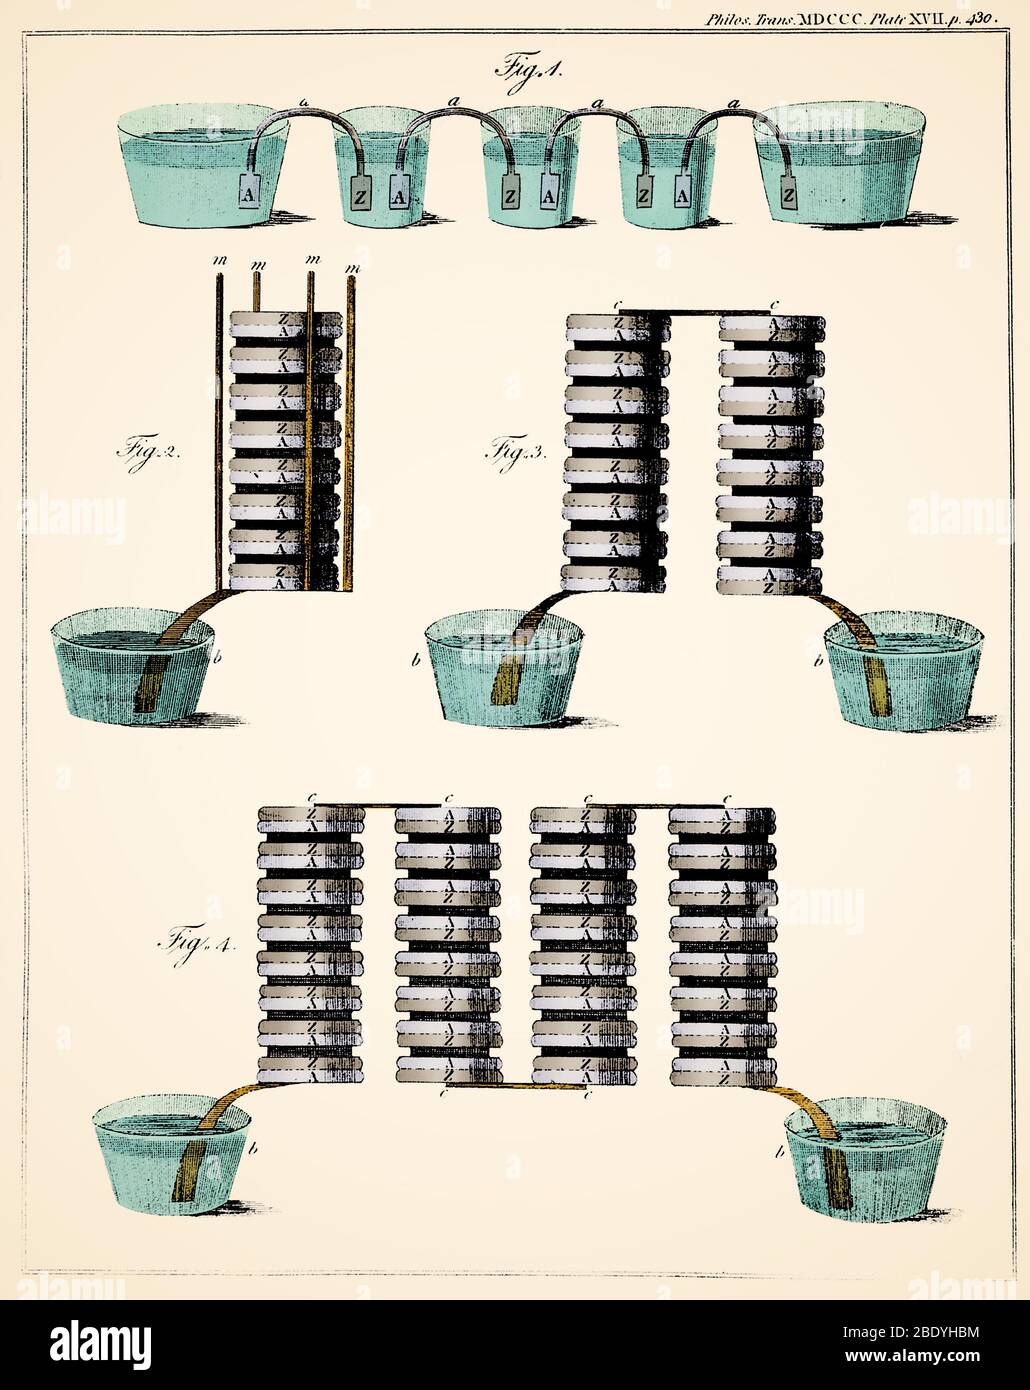 Alessandro volta, 'Corona delle Coppe' e pile Voltaiche, 1800 Foto Stock